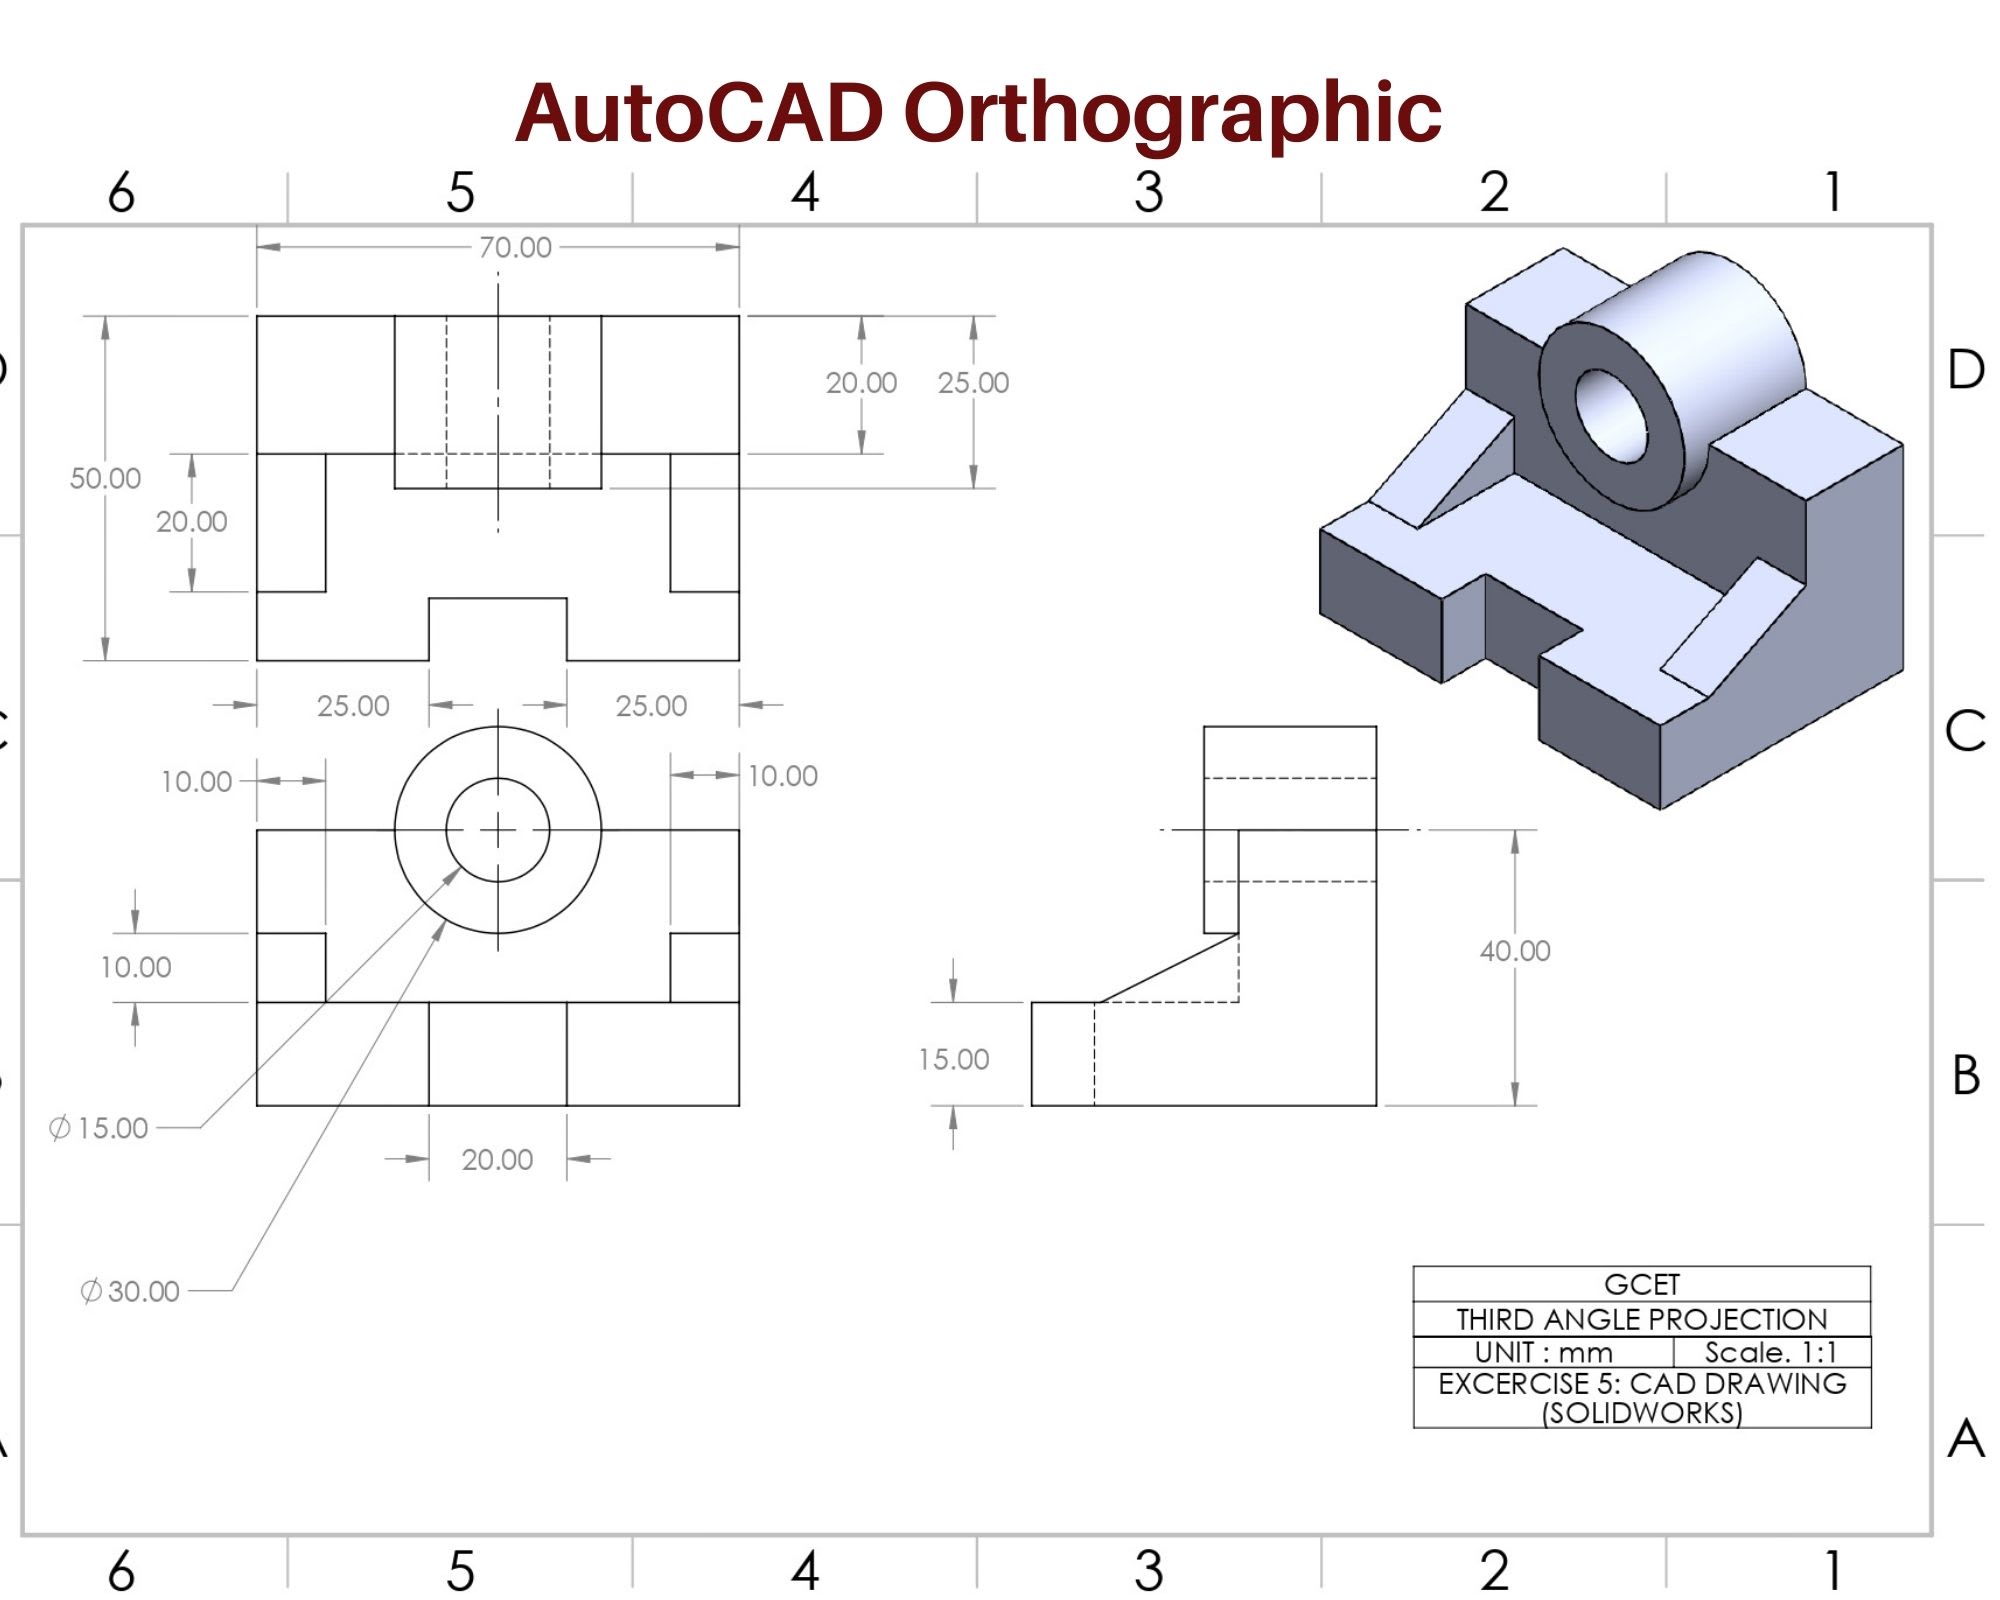 Vẽ cơ khí 2D, 3D trong Autocad và Inventor là một kỹ năng cần thiết cho các kỹ sư và nhà thiết kế đồ hoạ. Hãy cùng tham gia và xem hình ảnh liên quan để tìm hiểu thêm về những cách vẽ và thiết kế hiệu quả và chuyên nghiệp nhất.